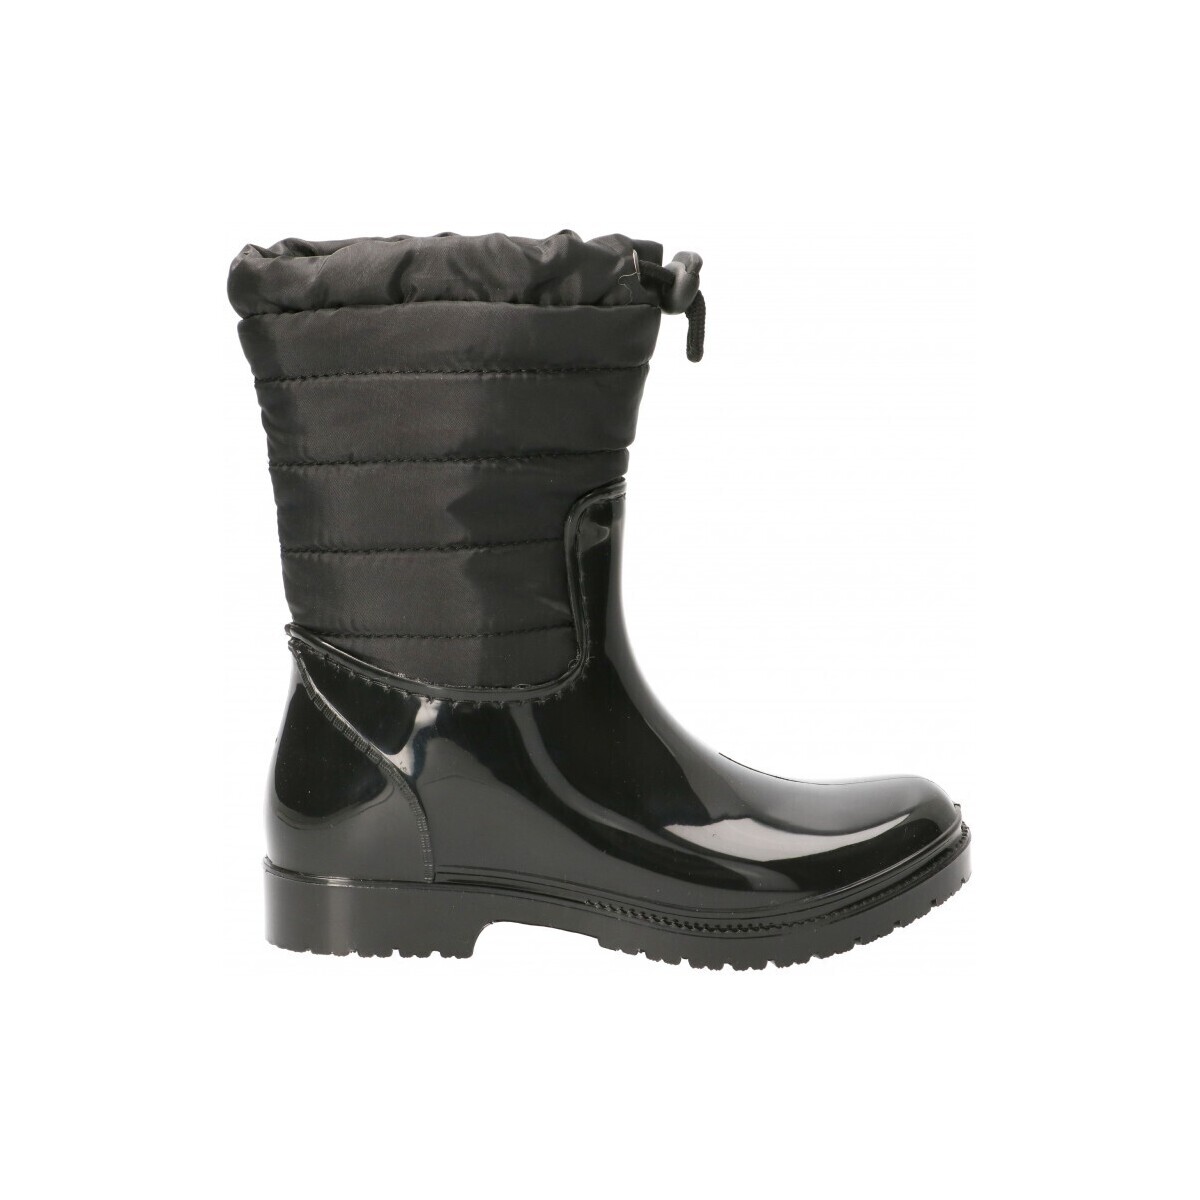 Παπούτσια Κορίτσι Μπότες βροχής Luna Collection 58598 Black